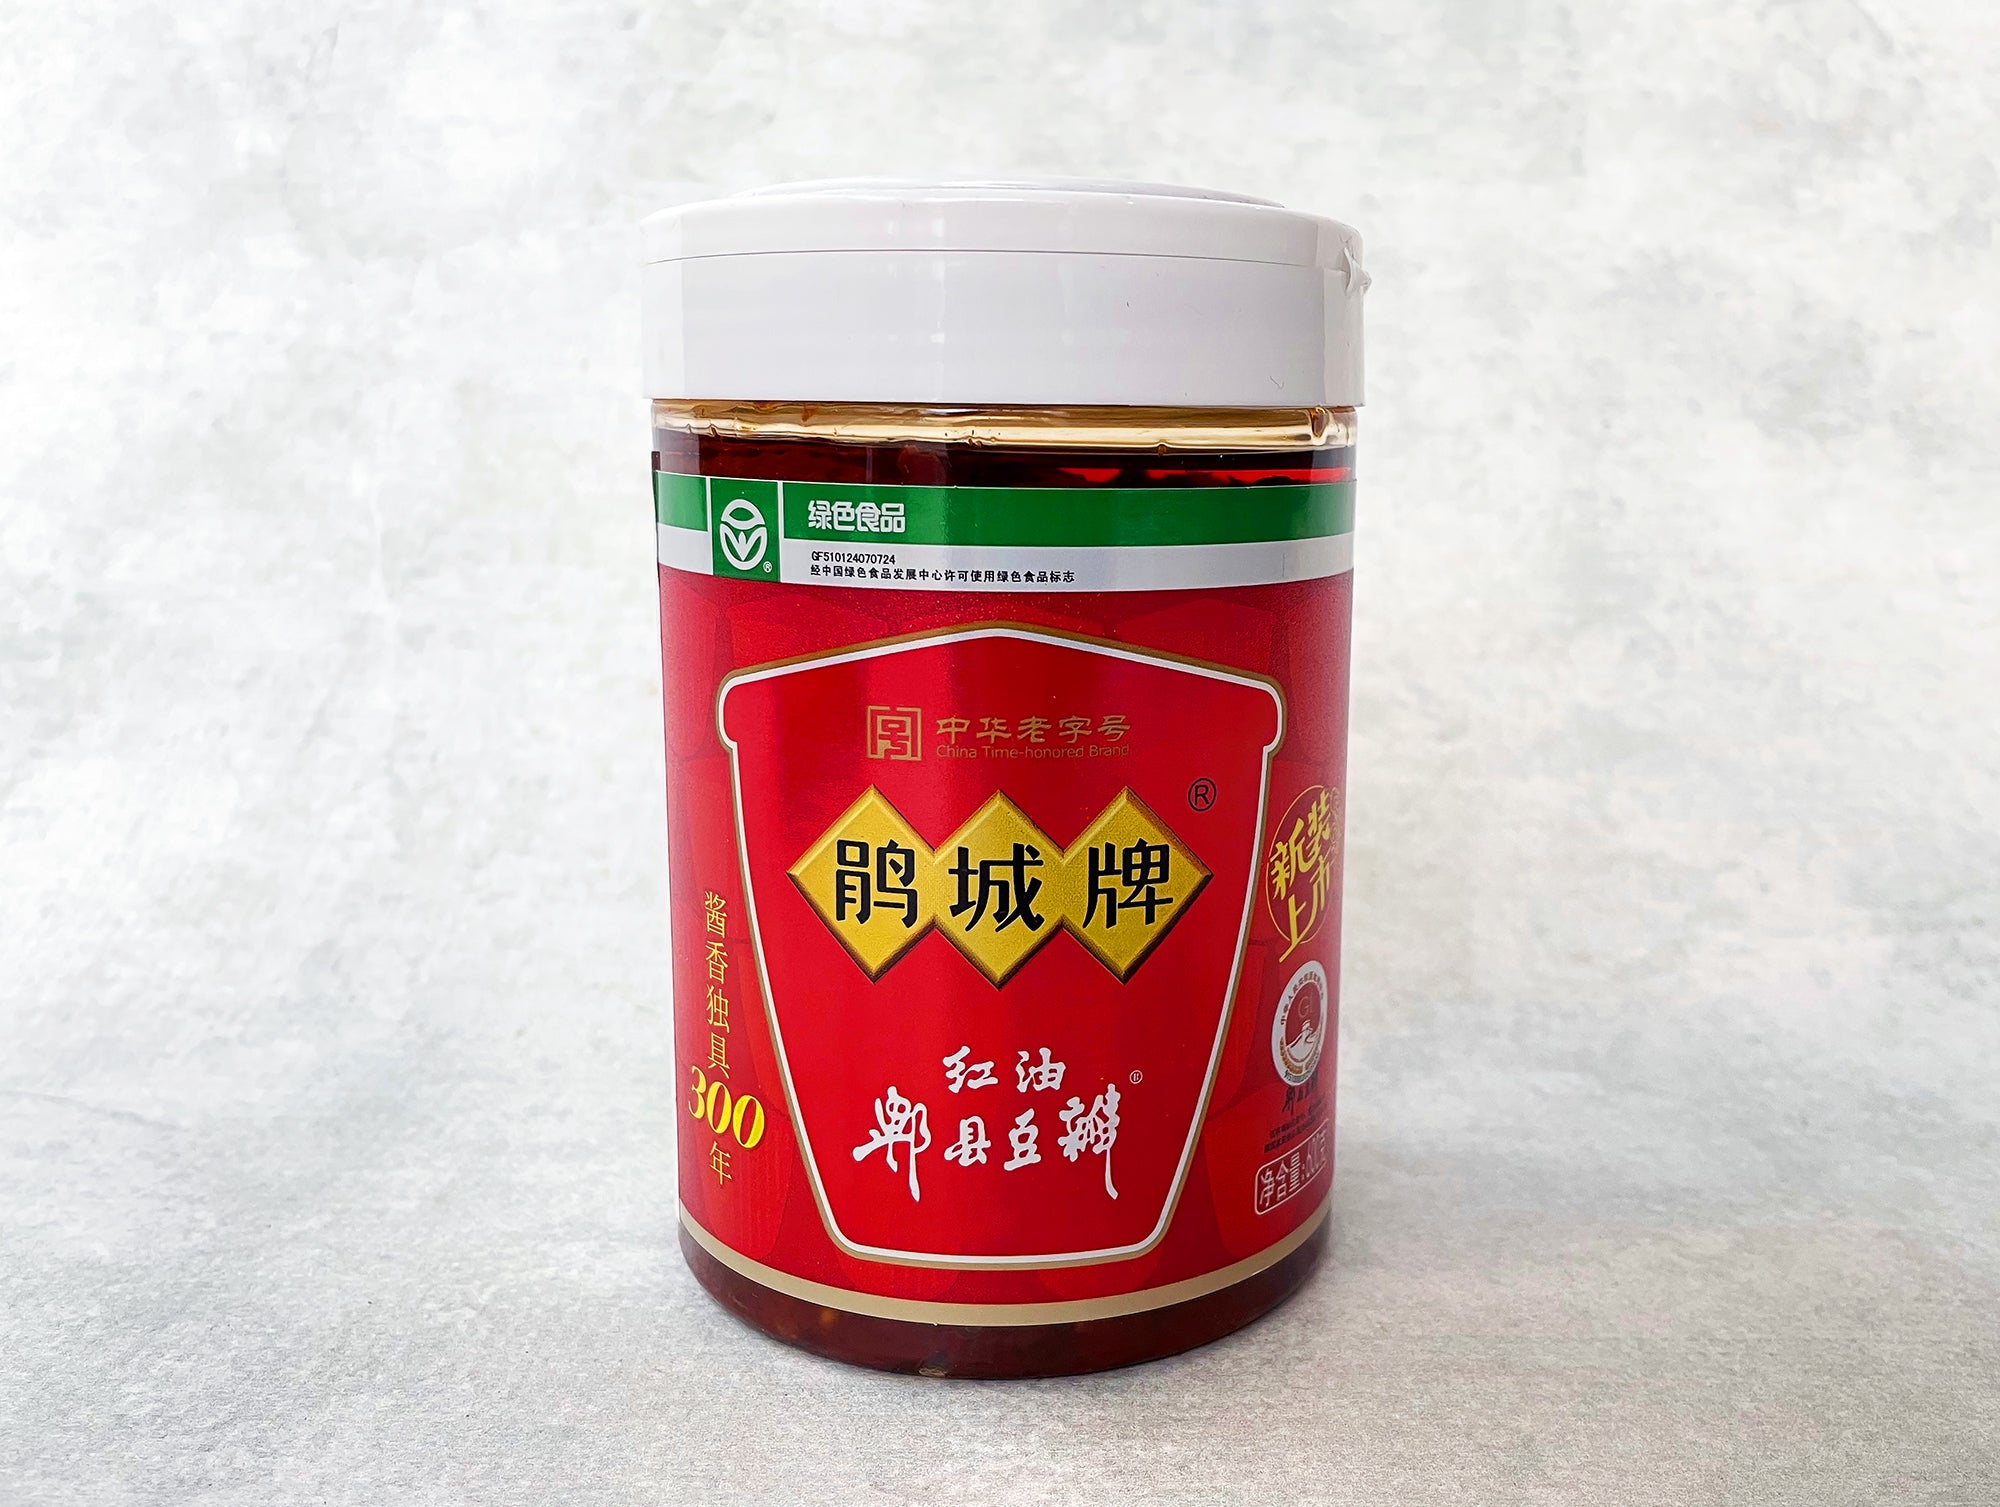 Pixian Red-Oil Broad Bean Paste (Juan Cheng Doubanjiang)